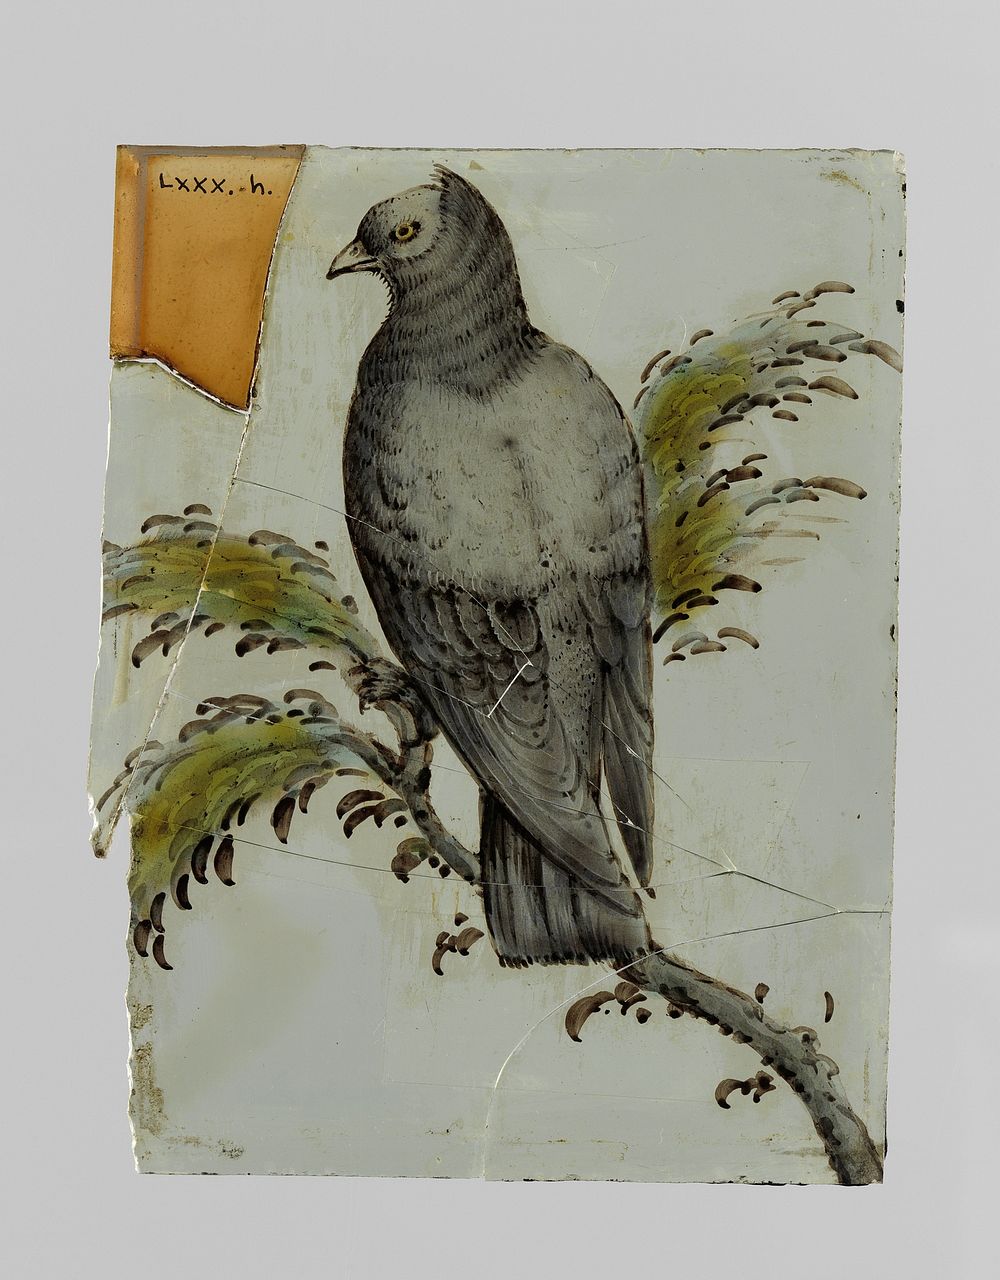 Ruit met een vogel op een tak (c. 1650 - c. 1675) by anonymous